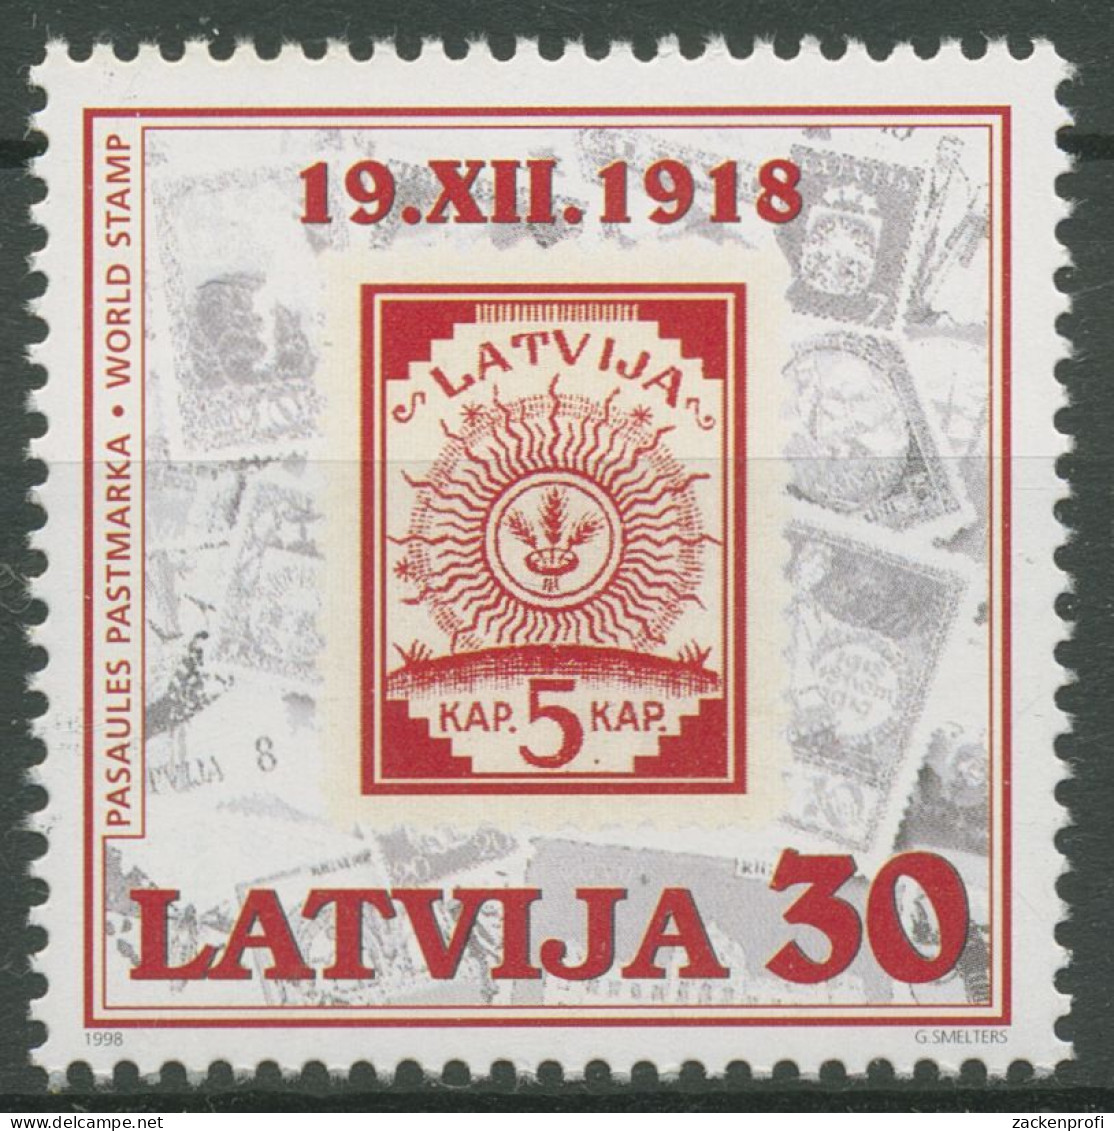 Lettland 1998 80 Jahre Briefmarken MiNr. 2 Ähren Im Sonnenkreis 487 Postfrisch - Letland